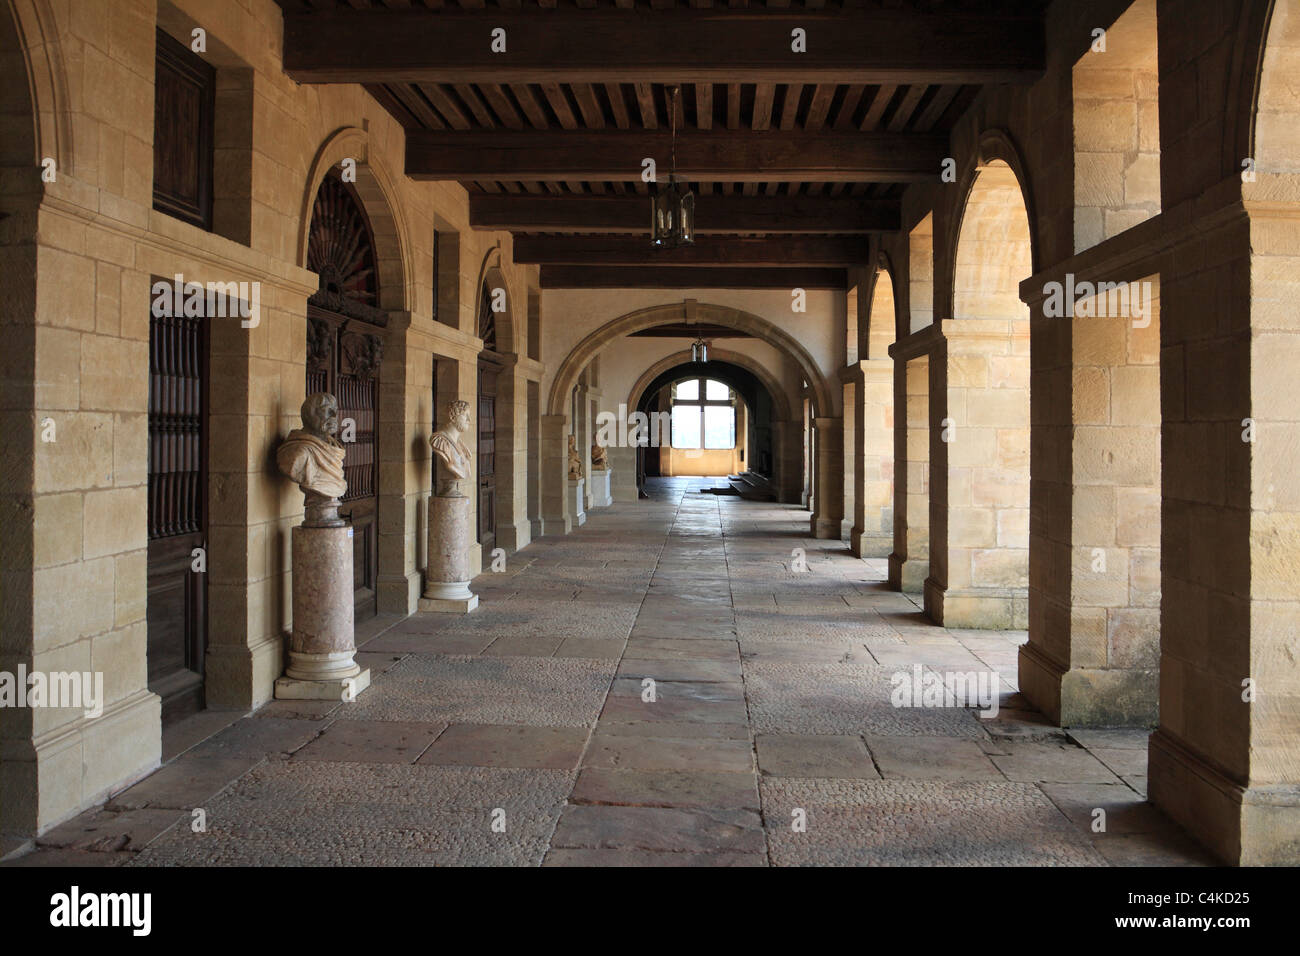 Colonnade alrededor del patio interior del palacio renacentista de Hautefort Dordogne Aquitania Francia Foto de stock